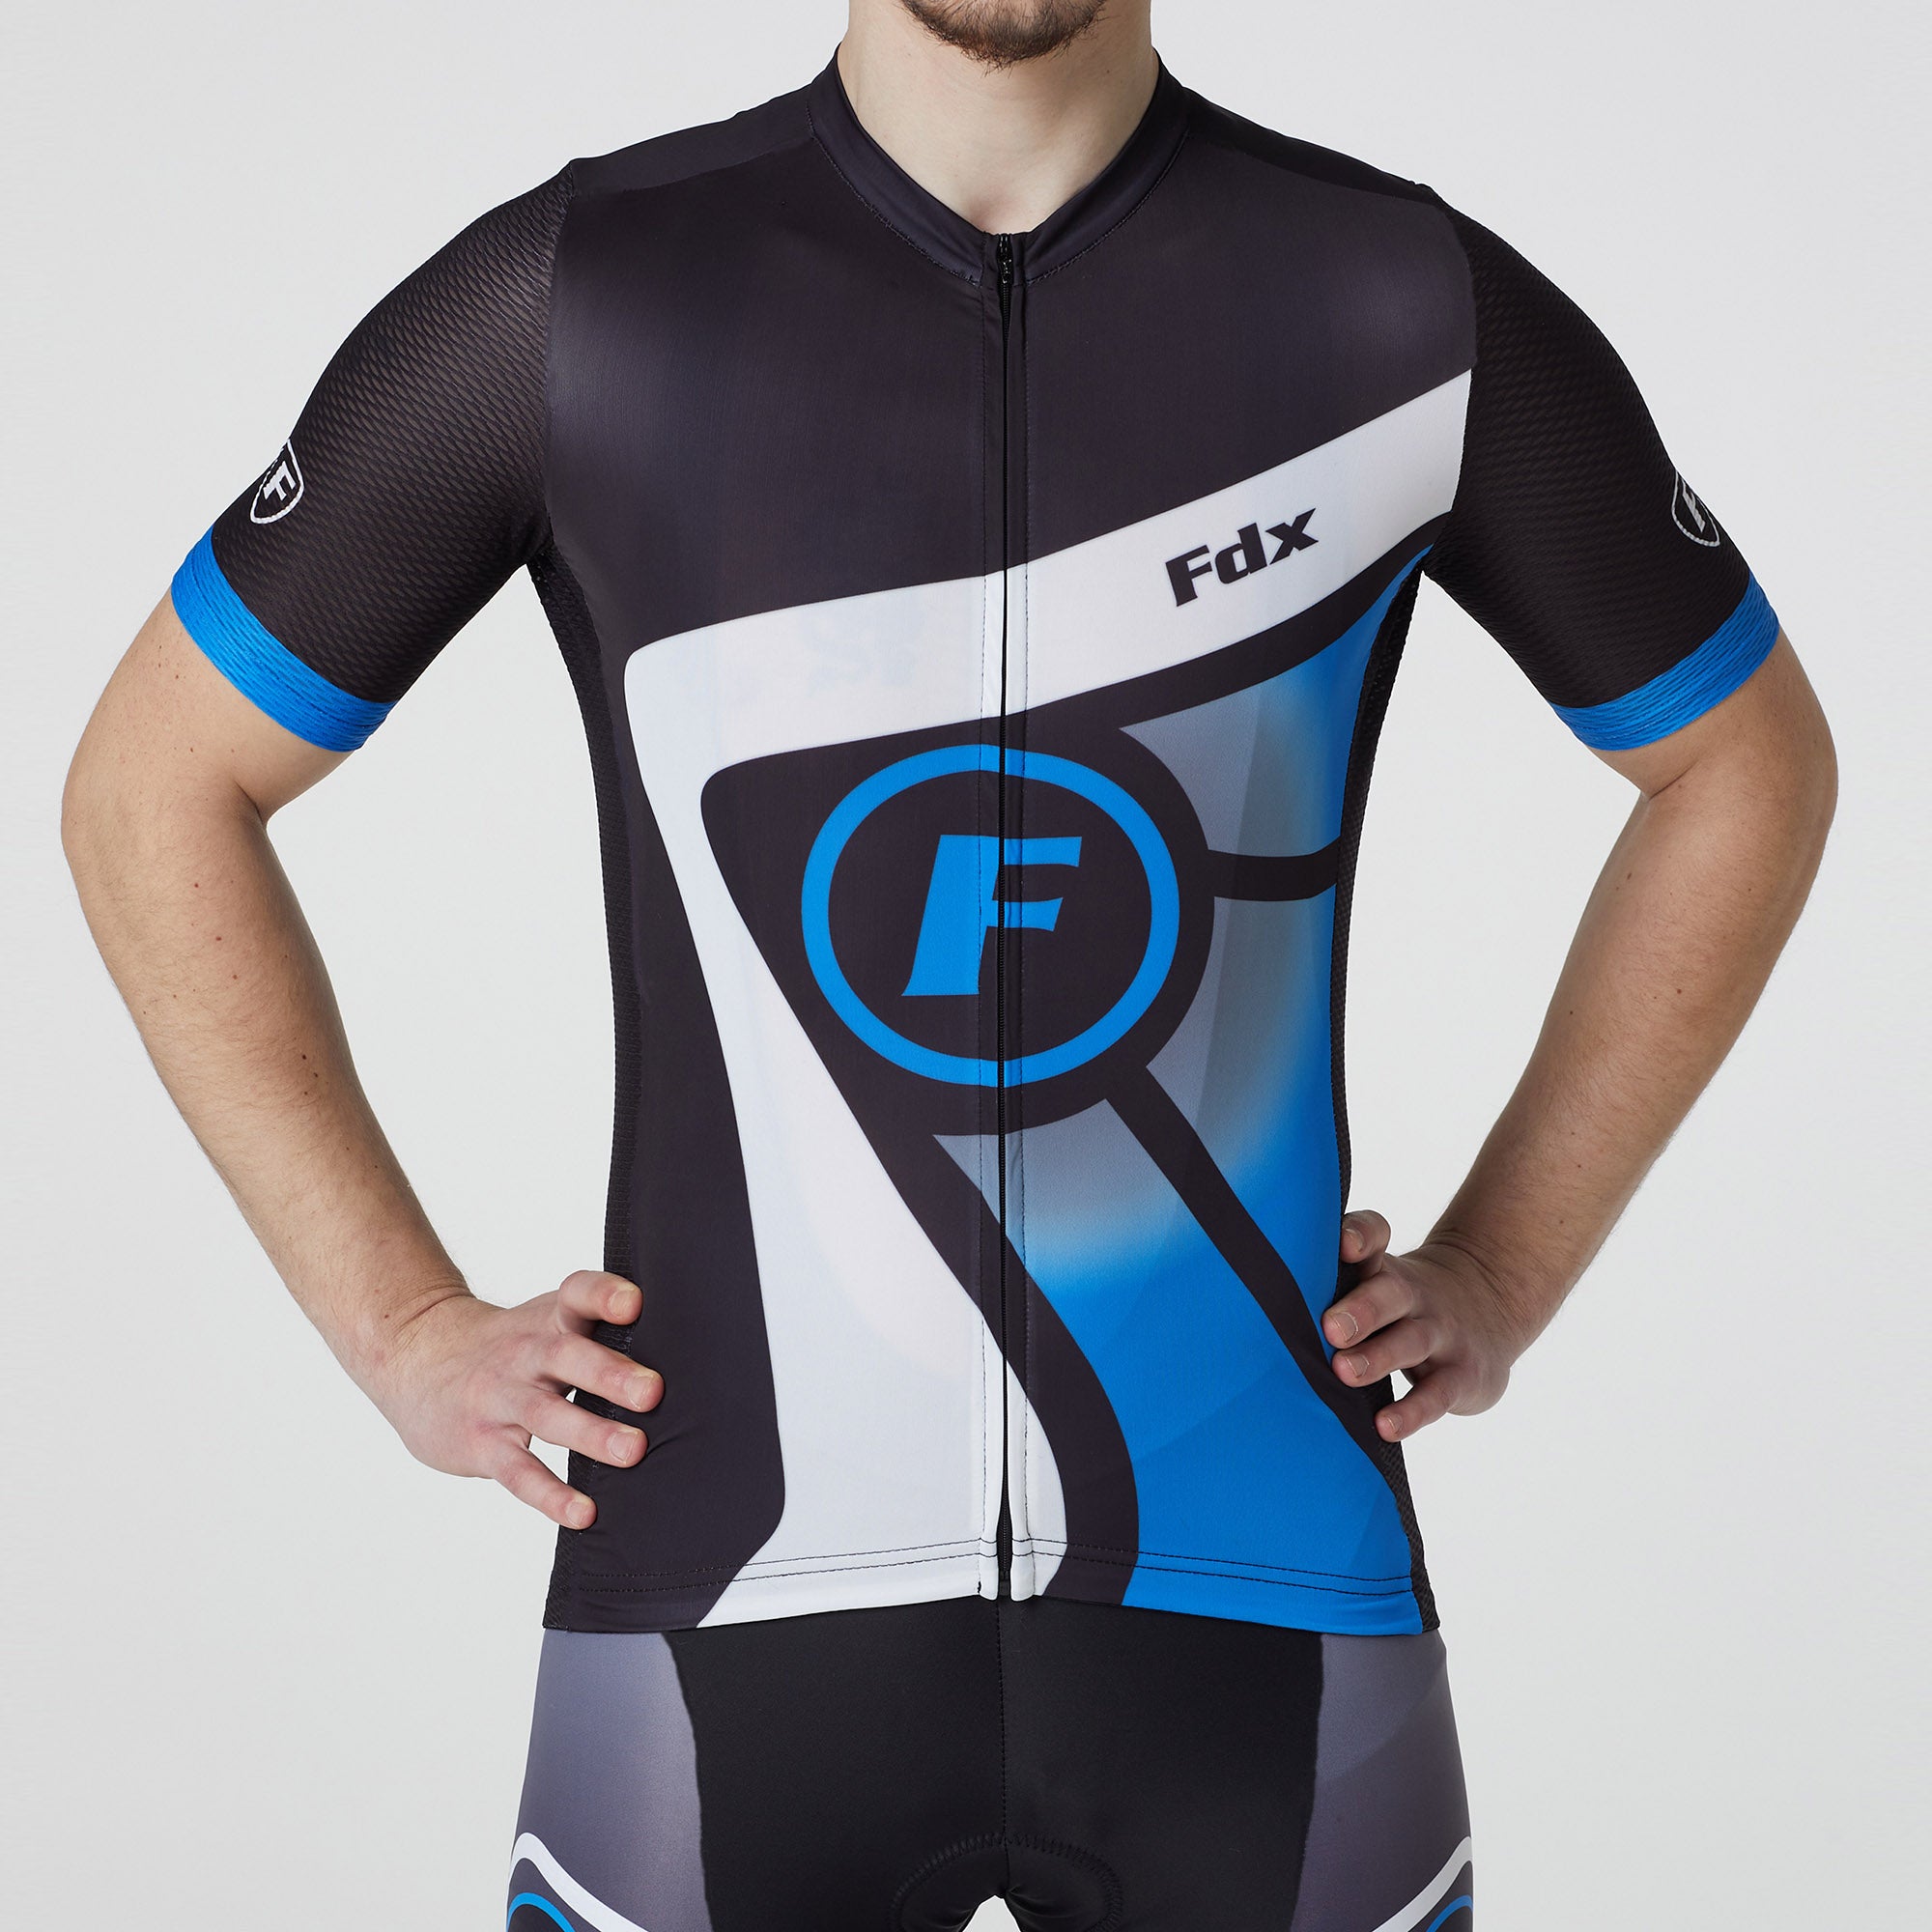 Fdx Mens Black & Blue Short Sleeve Cycling Jersey for Summer Best Road Bike Wear Top Light Weight, Full Zipper, Pockets & Hi-viz Reflectors - Signature